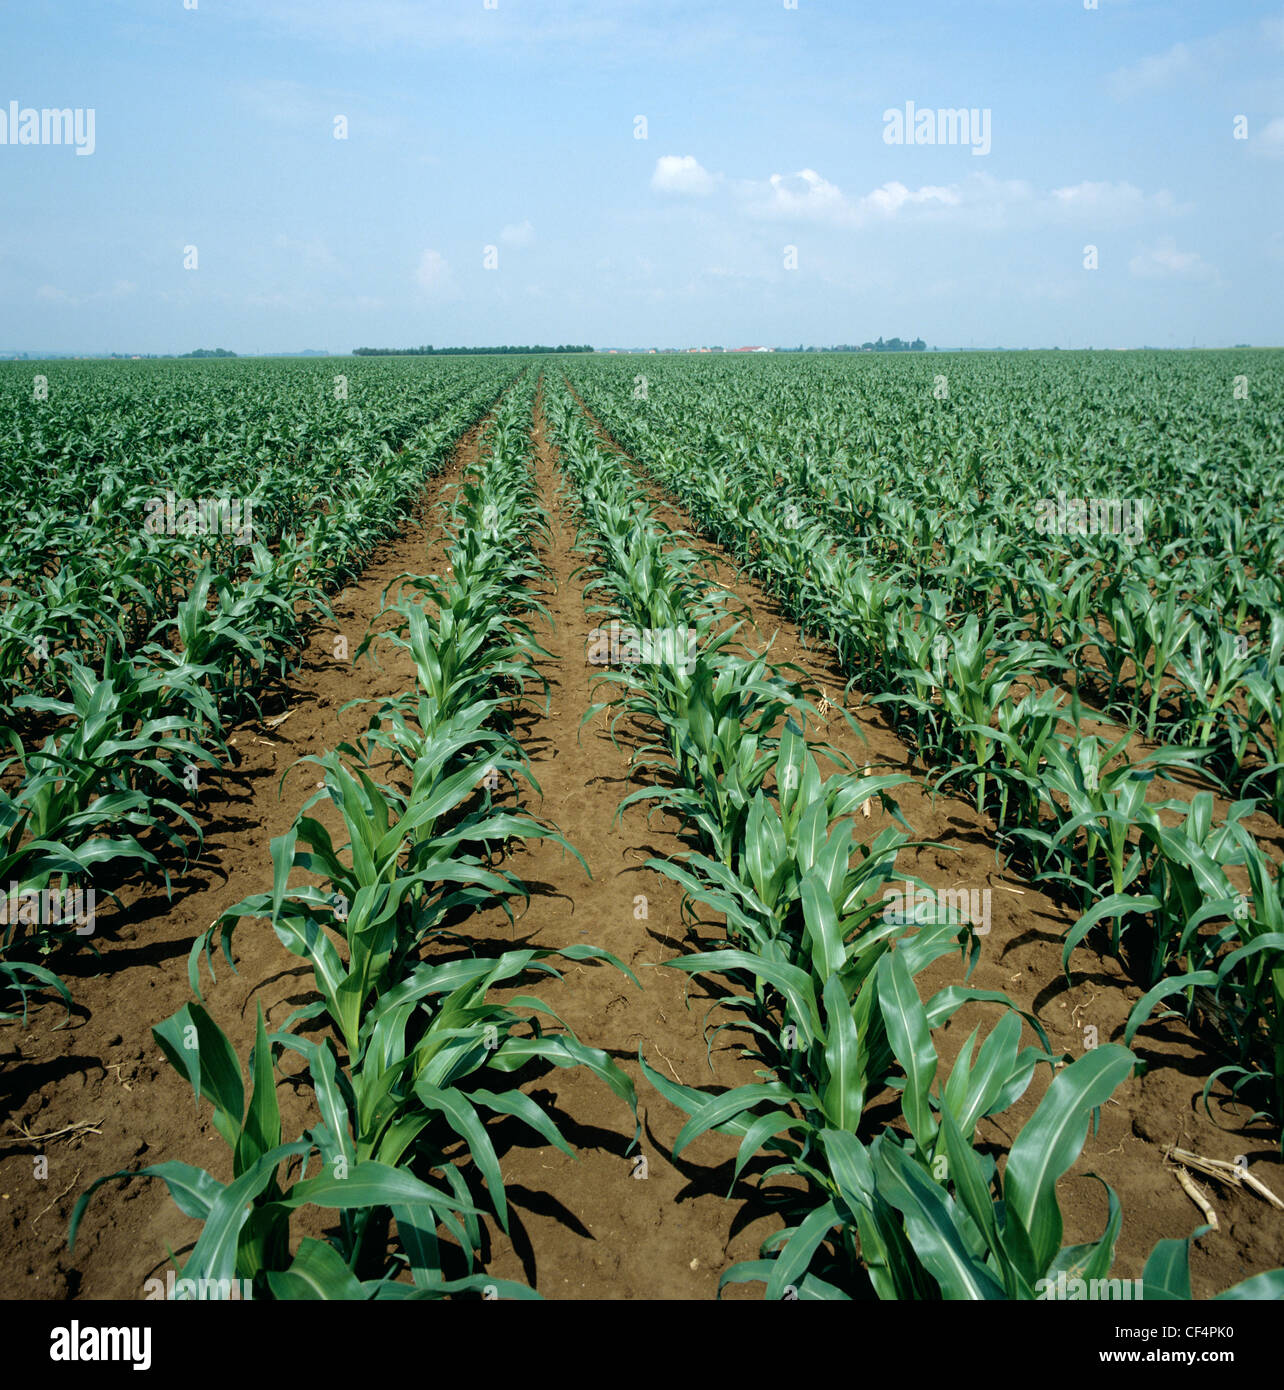 Excelente limpieza de filas de un joven cosecha maíz o trigo, Alsacia, Francia Foto de stock